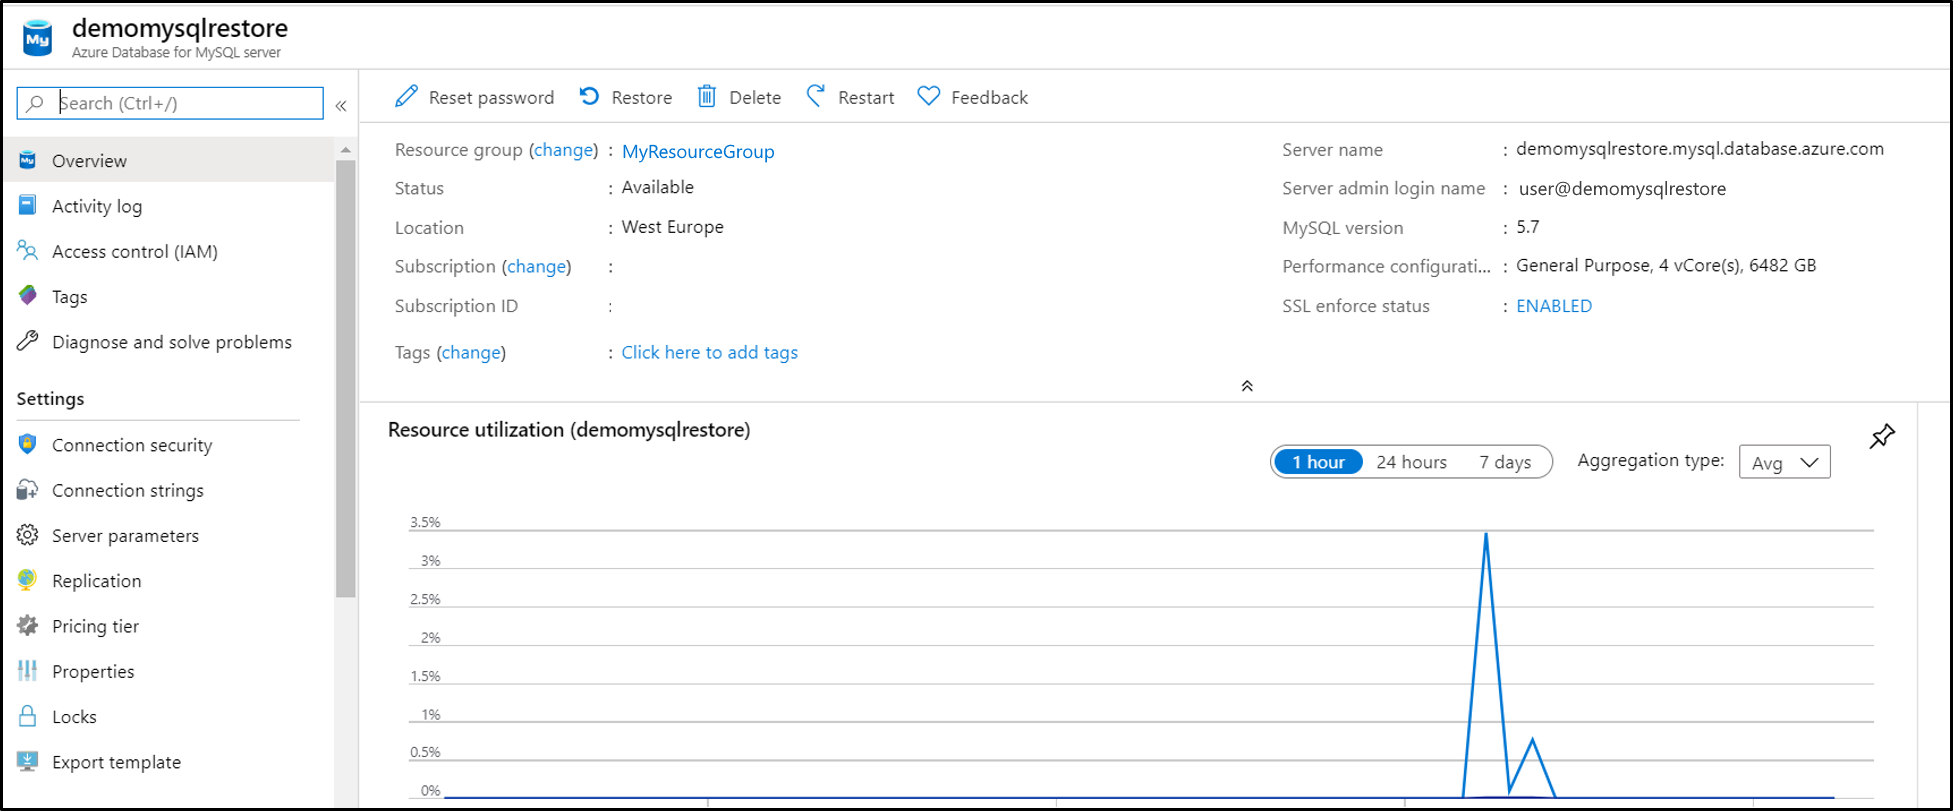 Снимок экрана с Базой данных Azure для MySQL, на котором представлены восстановленные функции